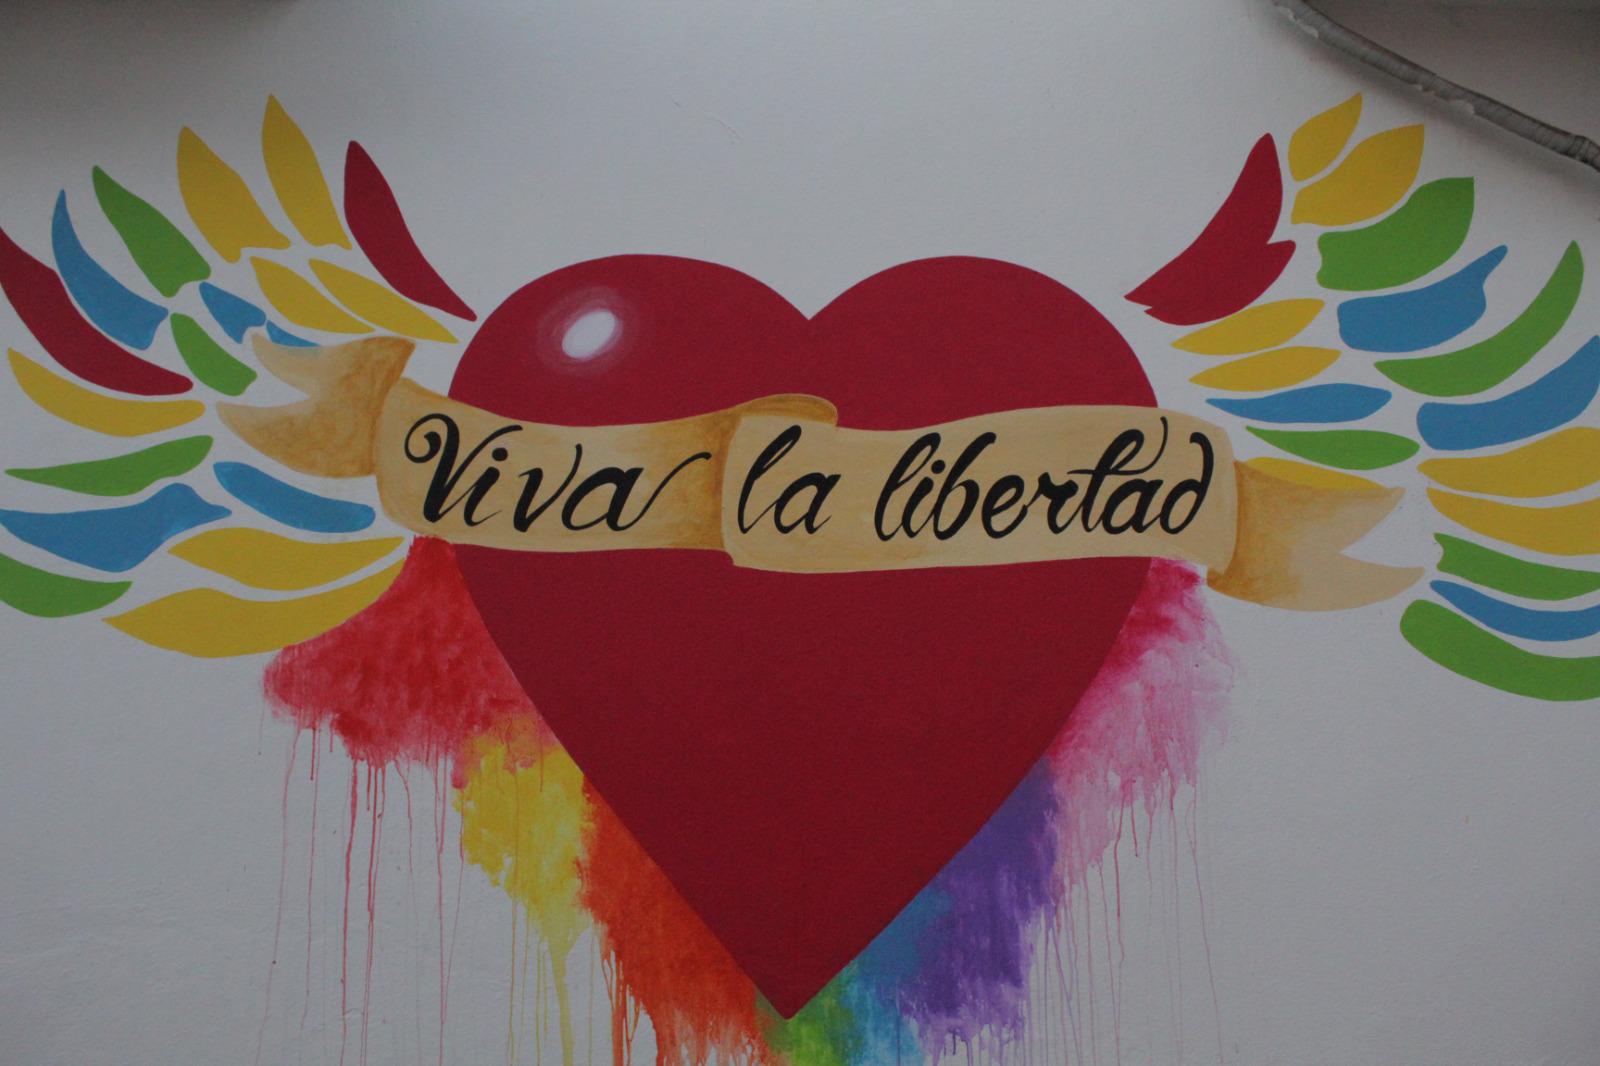 $!Develan mural de la diversidad en Rosario